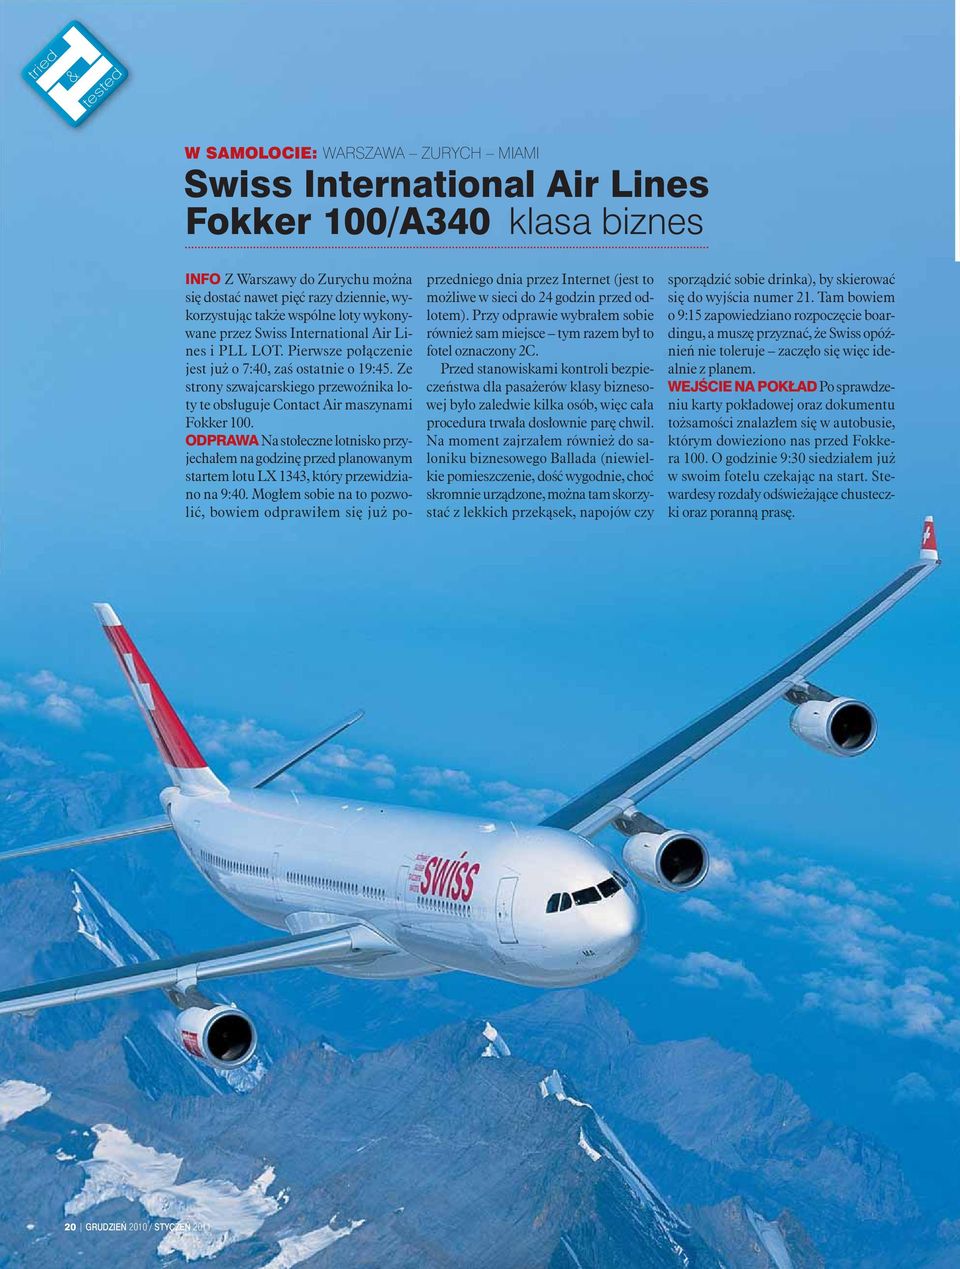 Ze strony szwajcarskiego przewoźnika loty te obsługuje Contact Air maszynami Fokker 100.